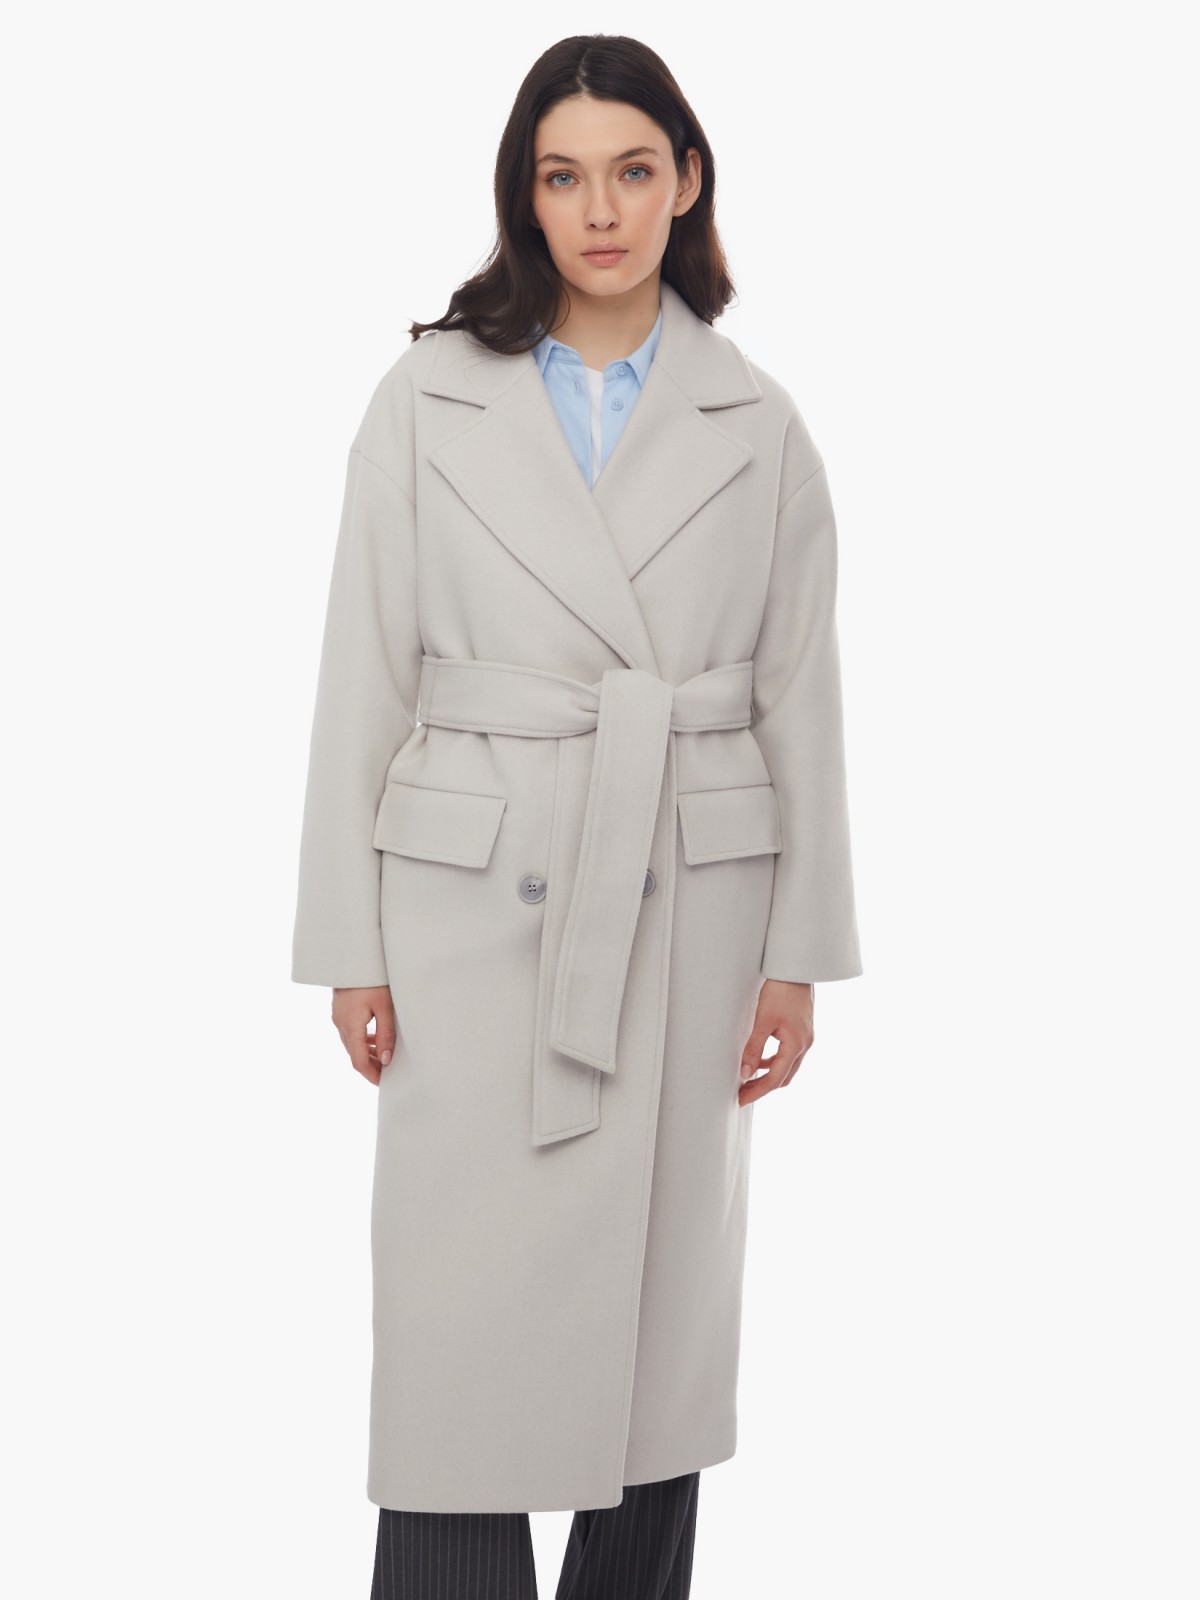 Длинное пальто оверсайз силуэта без утеплителя на пуговицах с поясом zolla 024125857064, цвет светло-серый, размер XS - фото 5